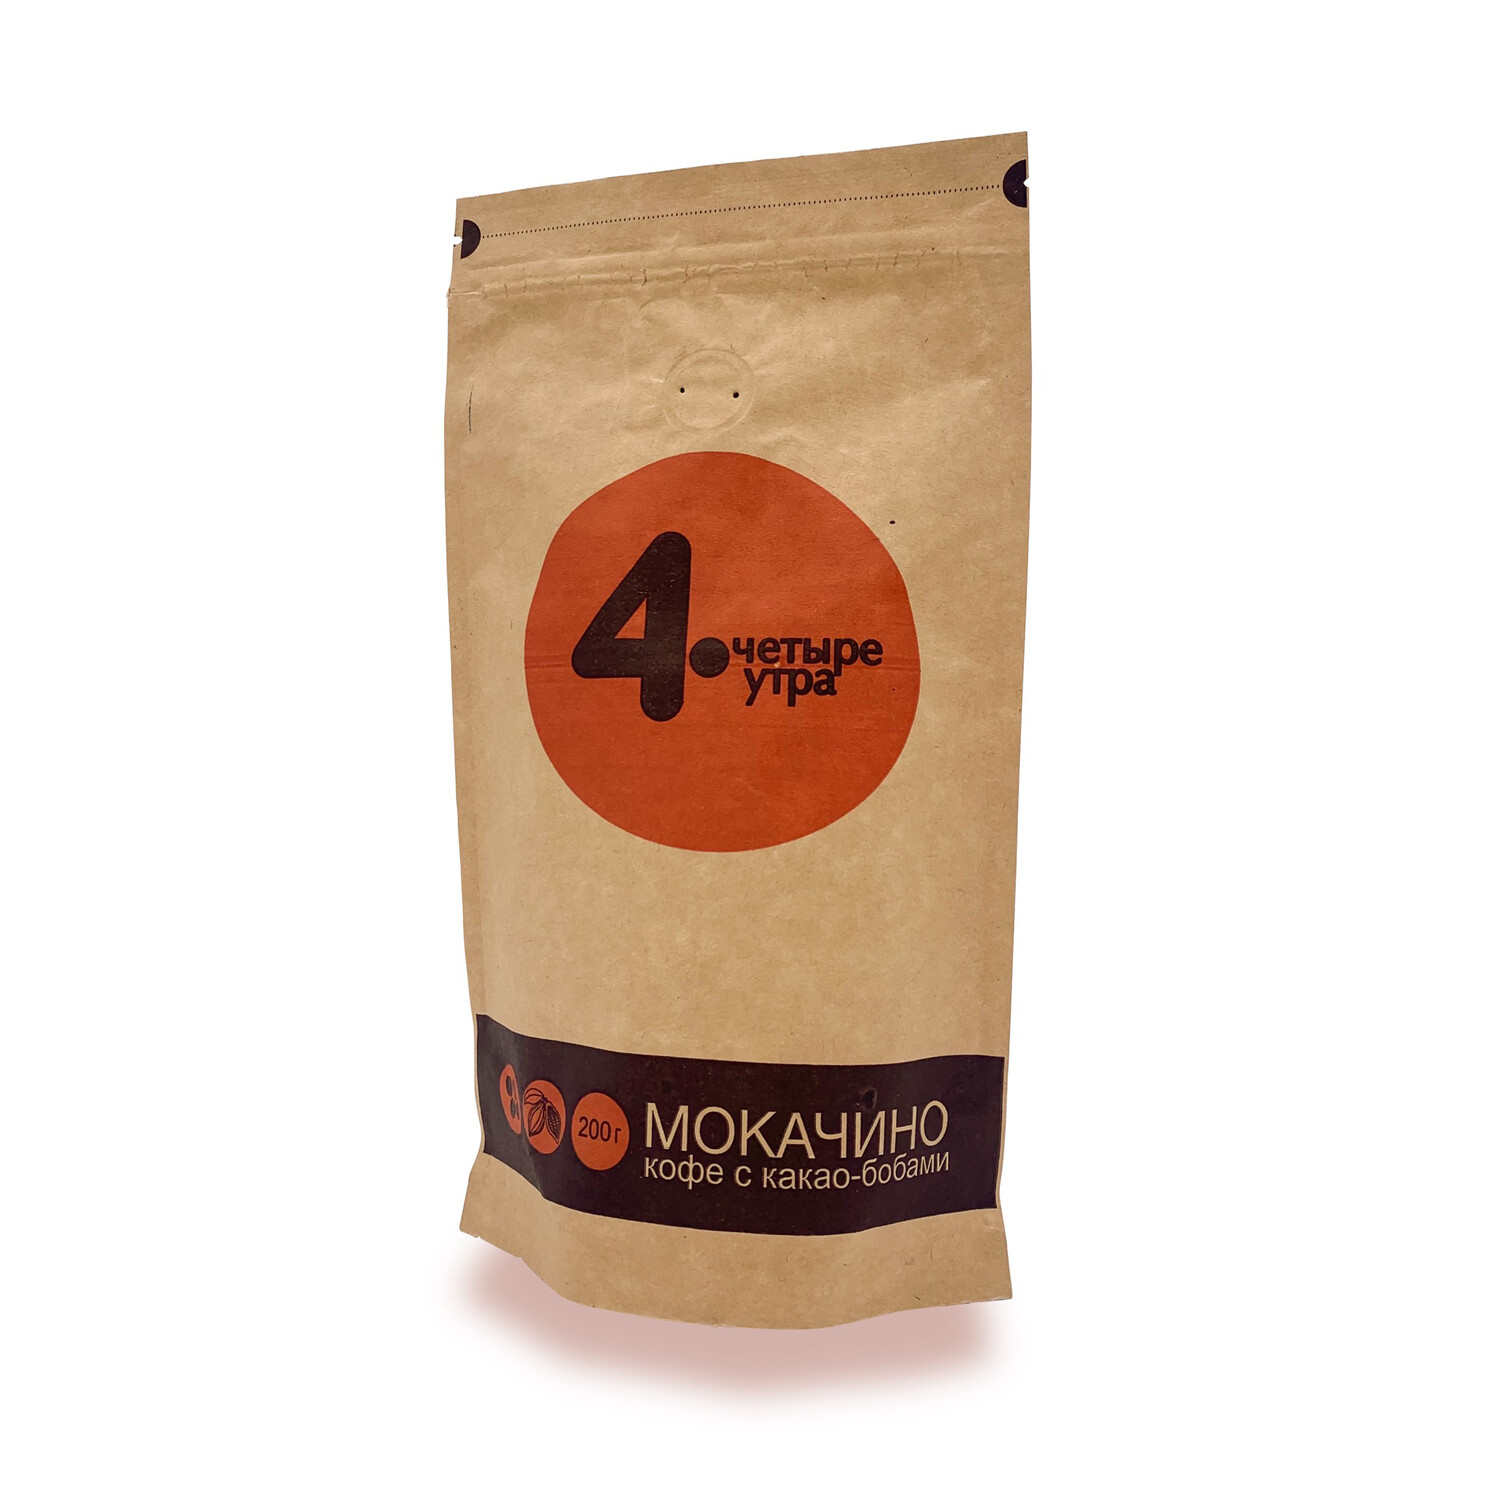 Мокачино: кофе с какао